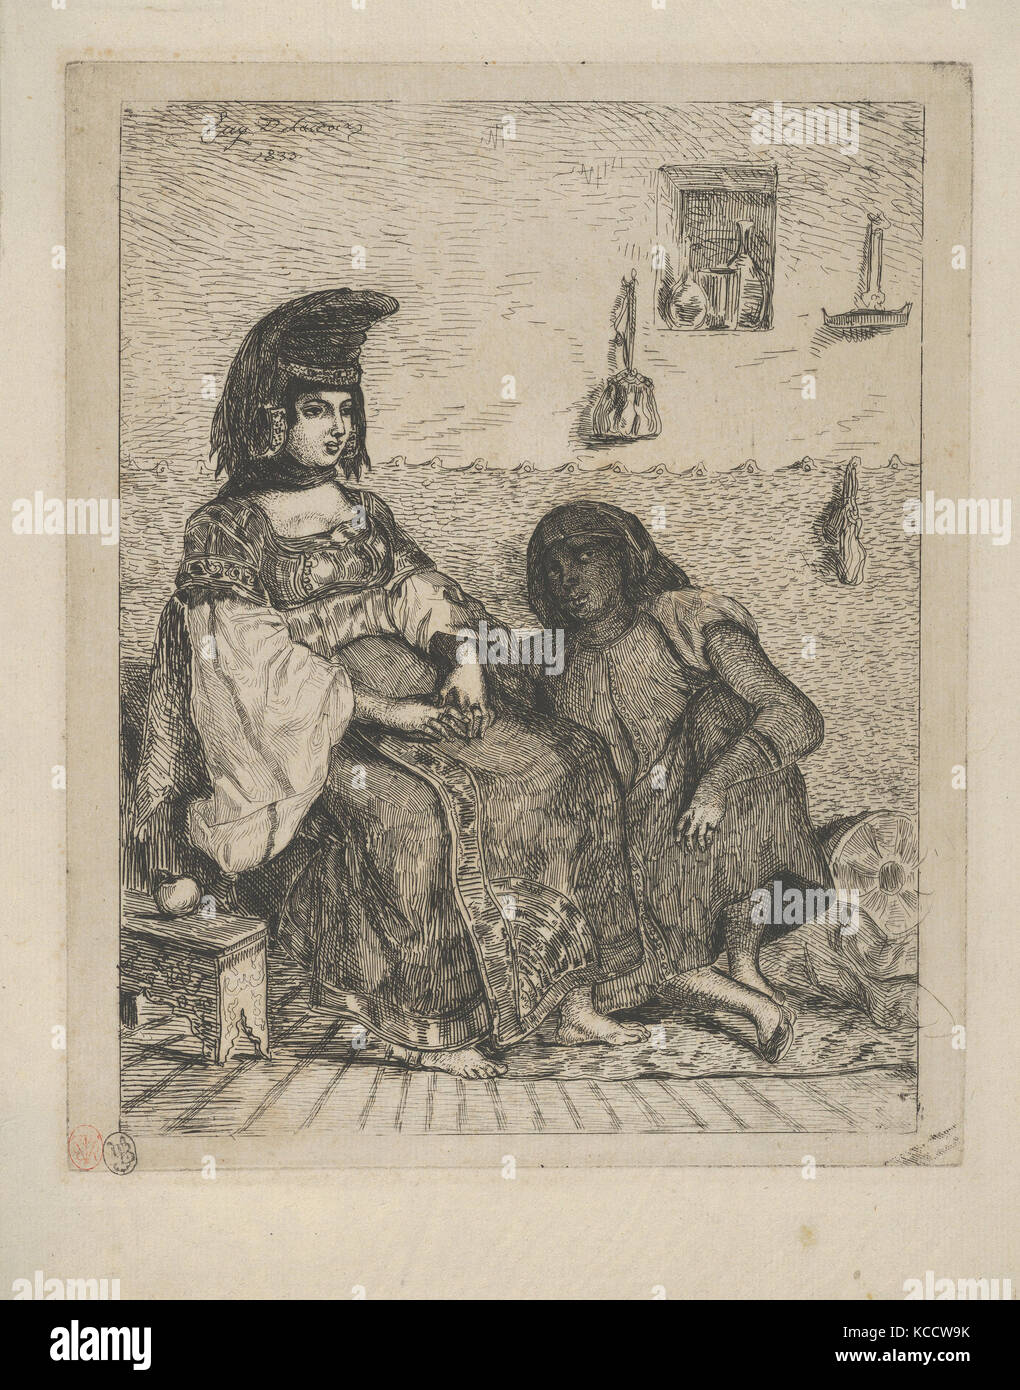 Juive algérienne avec son serviteur, Eugène Delacroix, 1833 Banque D'Images